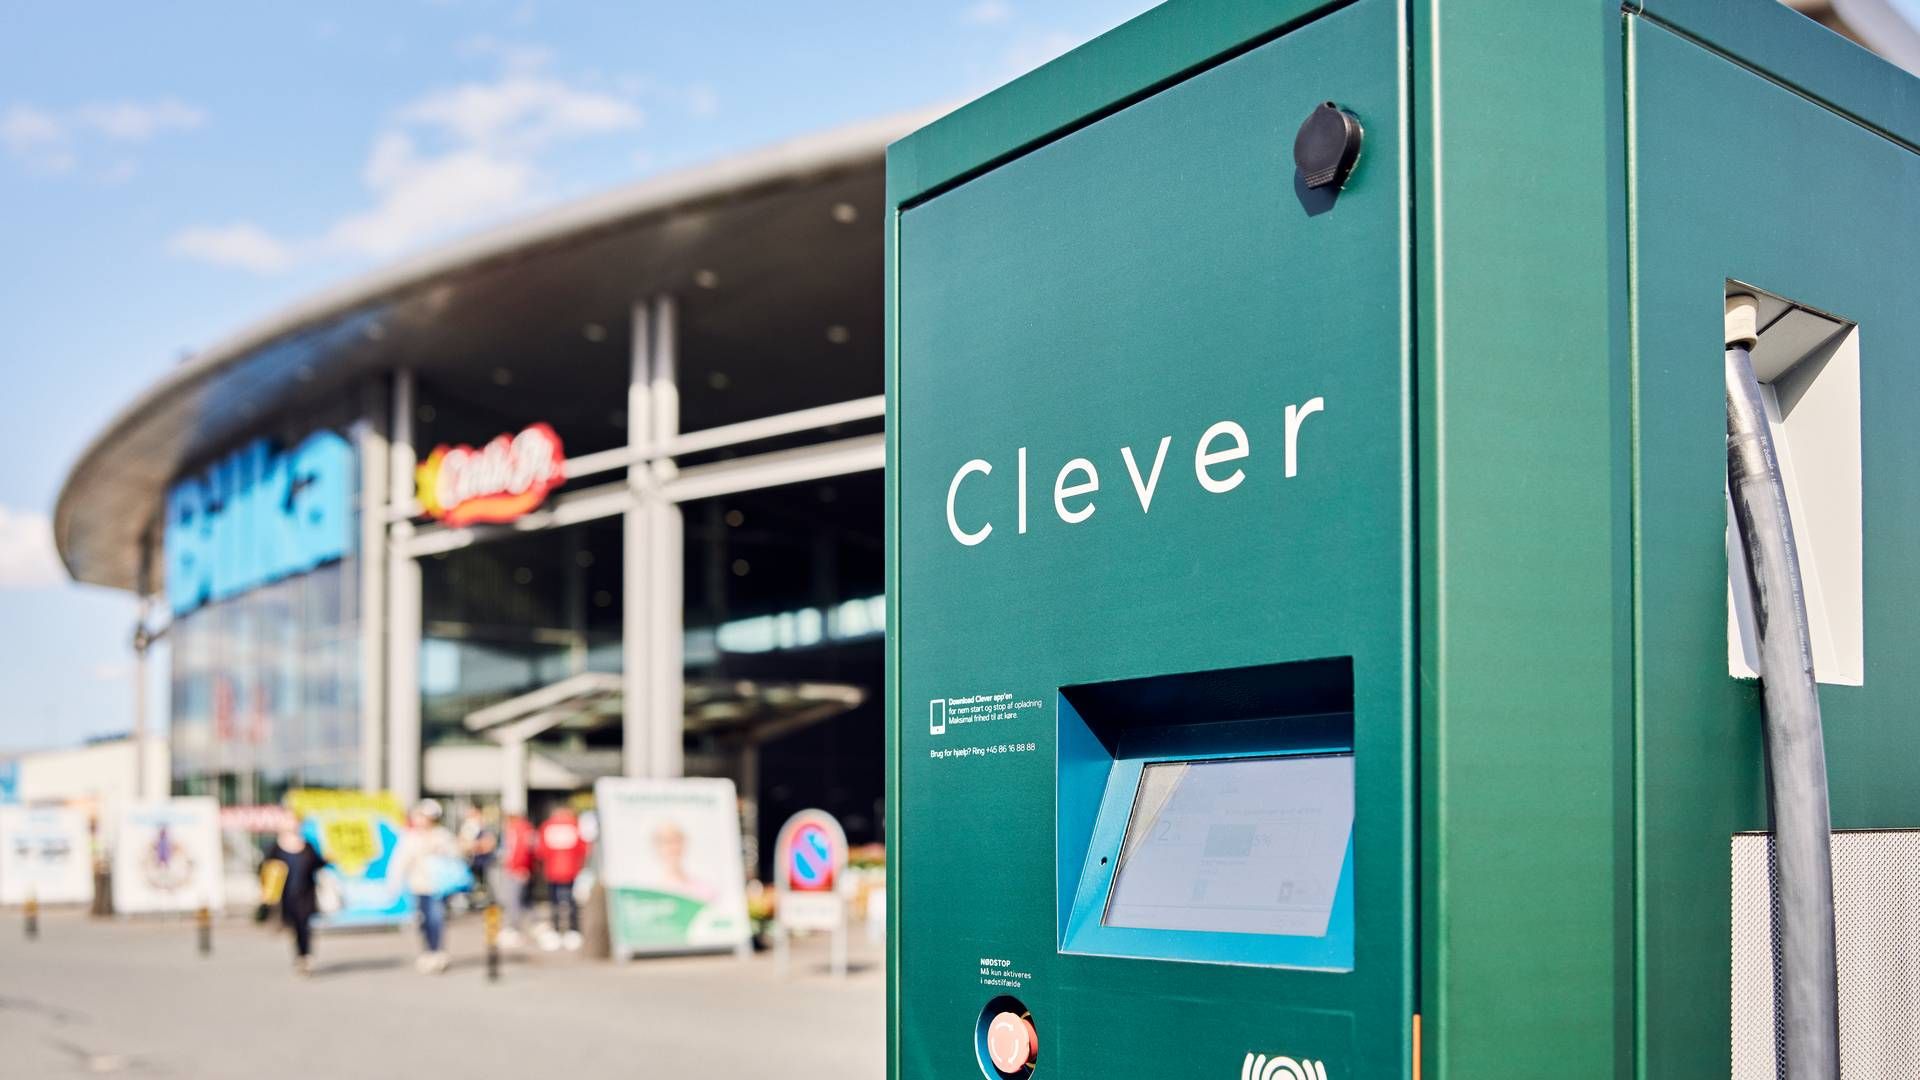 Ladeoperatøren Clever er ejet af energiselskaberne Andel og NRGi. | Foto: Salling Gorup/pr